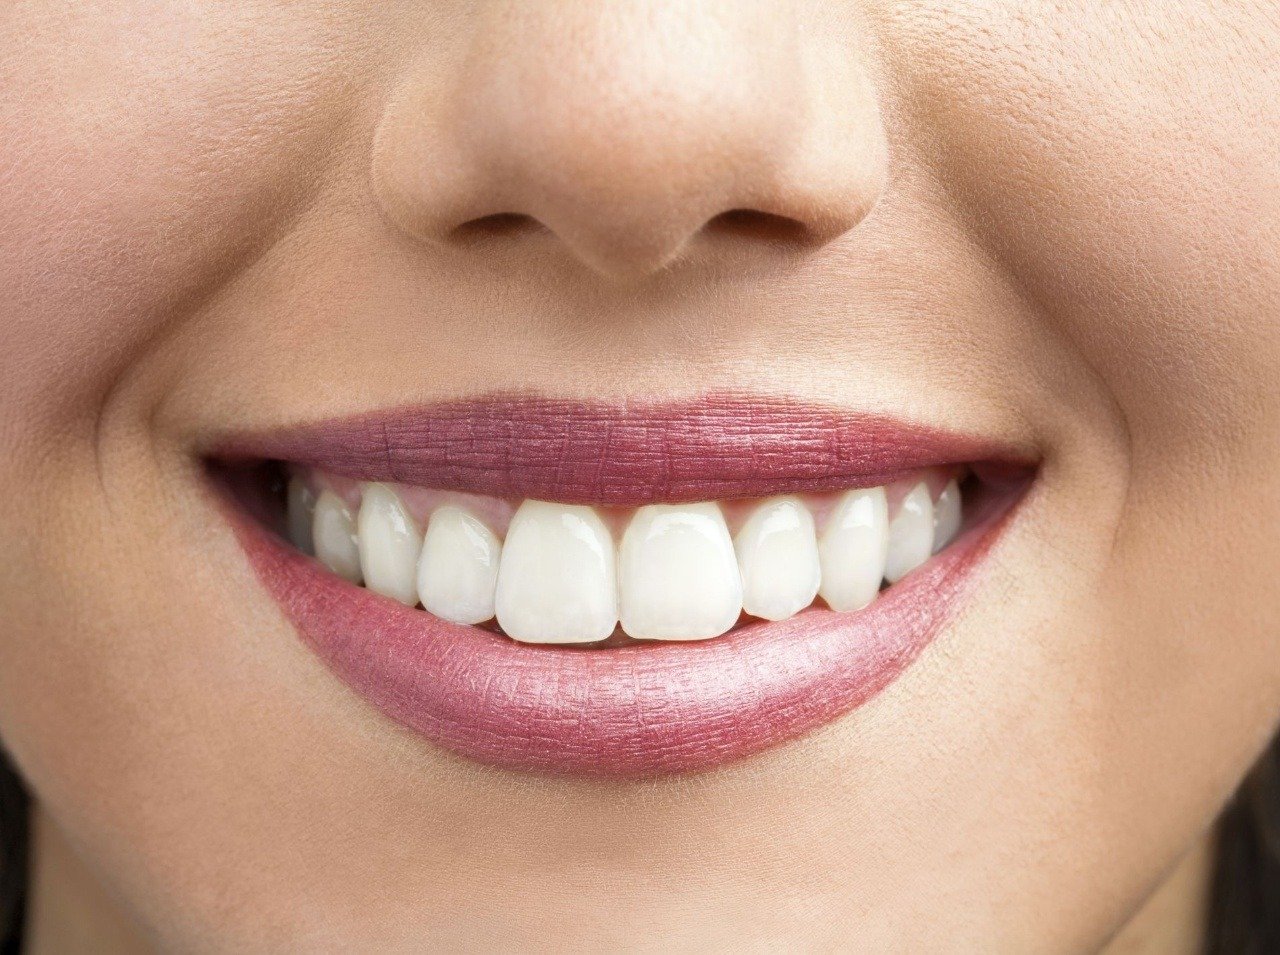 Biele zuby dosiahnete vďaka zubnej paste bez chemických látok.